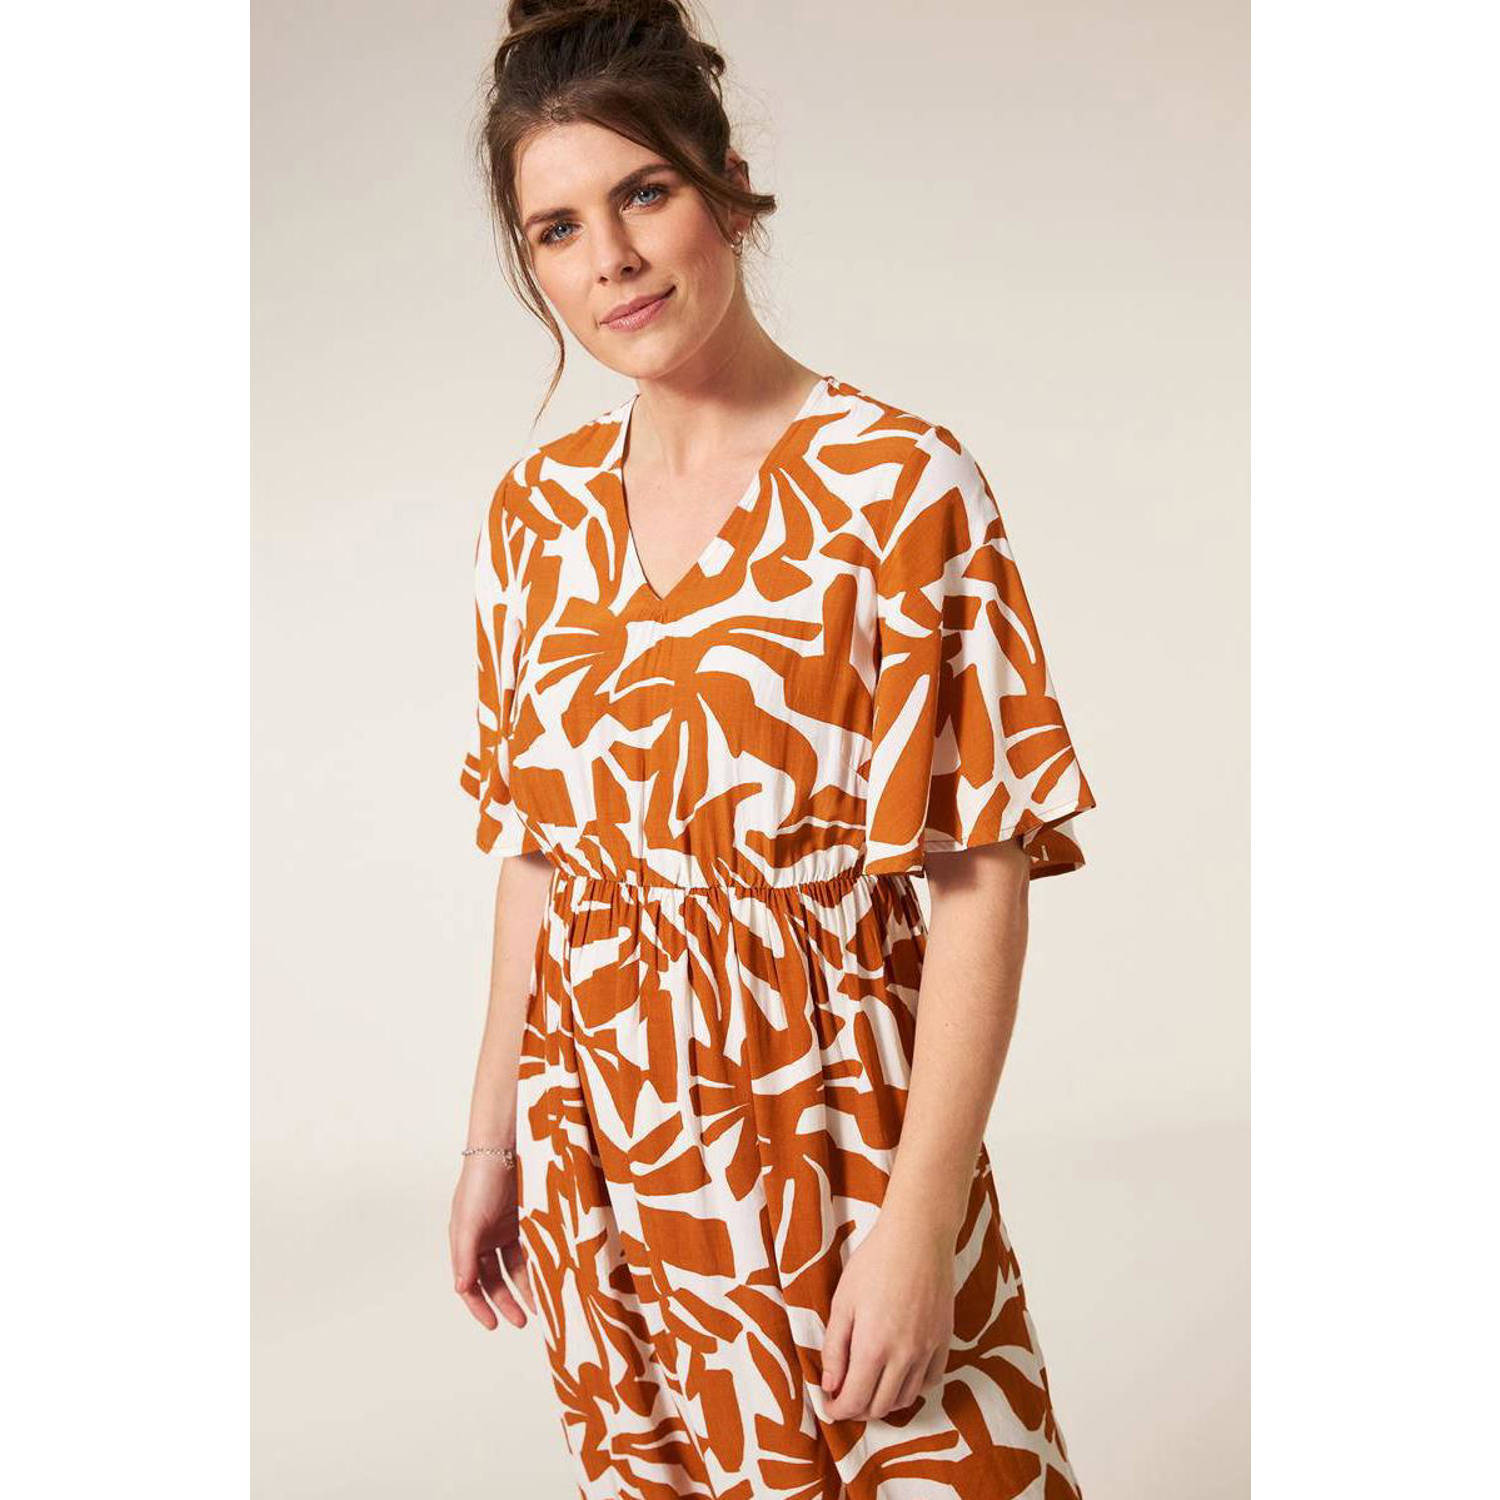 Miss Etam maxi A-lijn jurk met all over print oranje wit